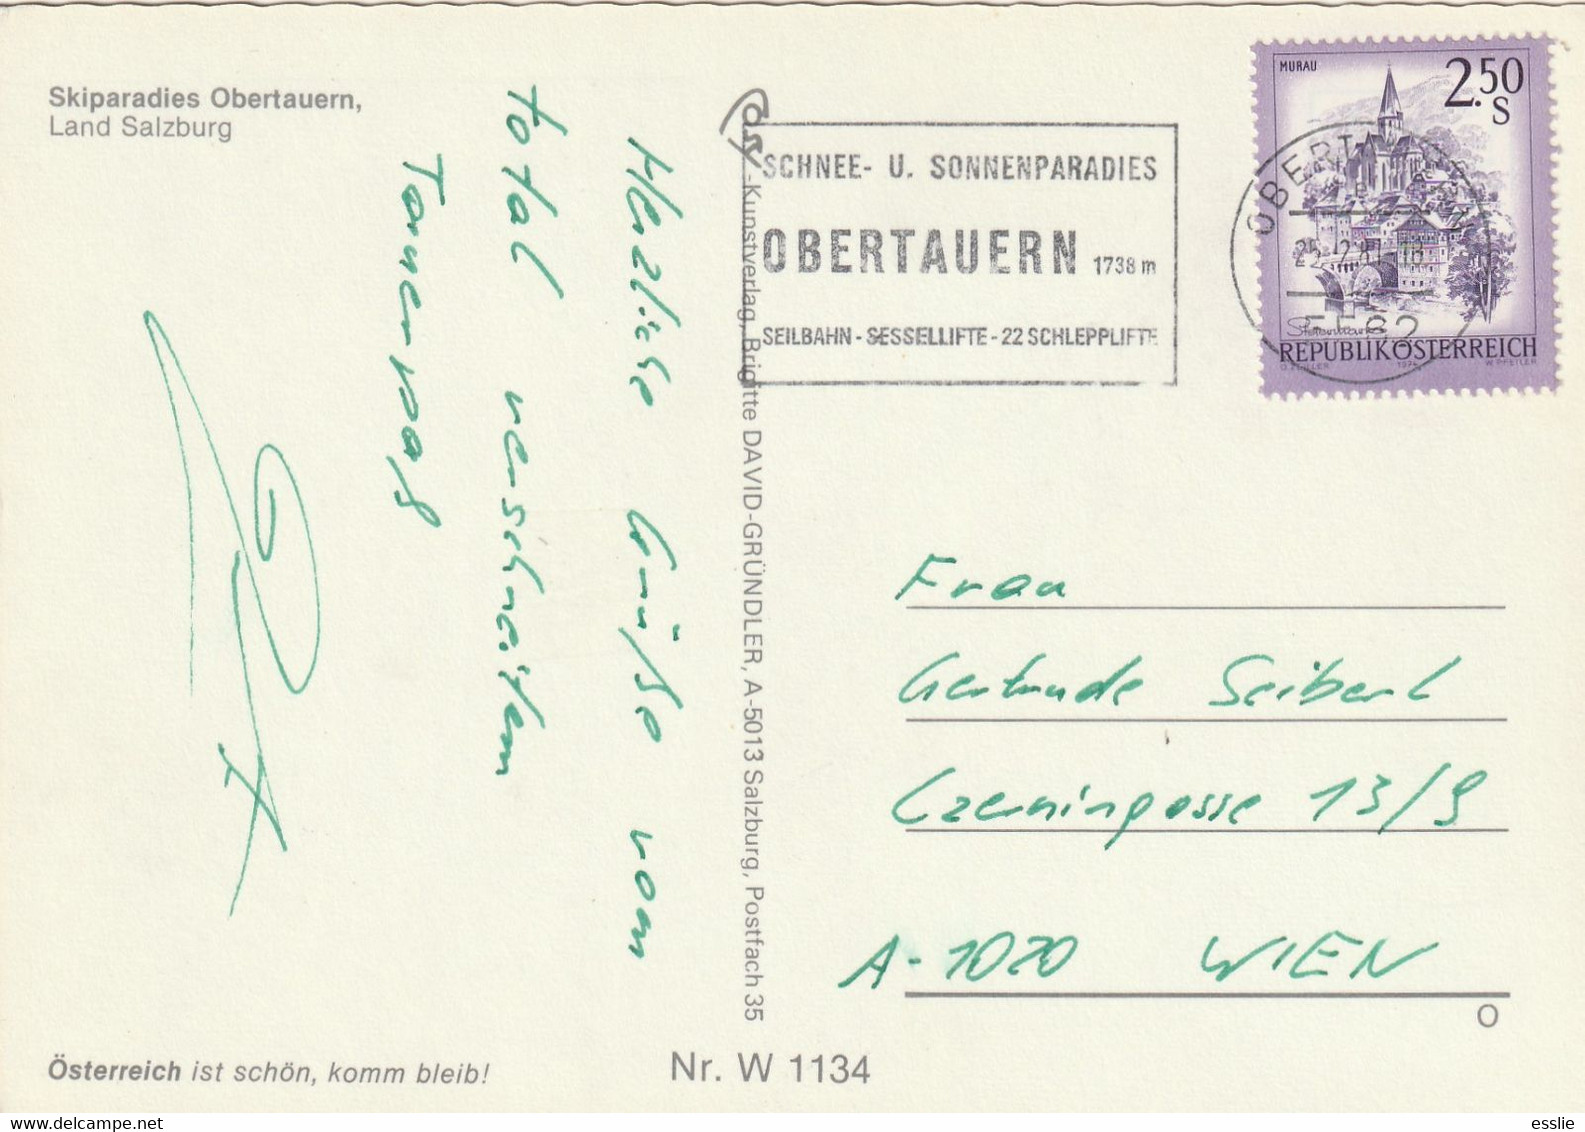 Austria Obertauern Salzburg - Postcard Post Card - 1981 Skiparadies Slogan Seilbahn Sesseeifte Schnee - Obertauern